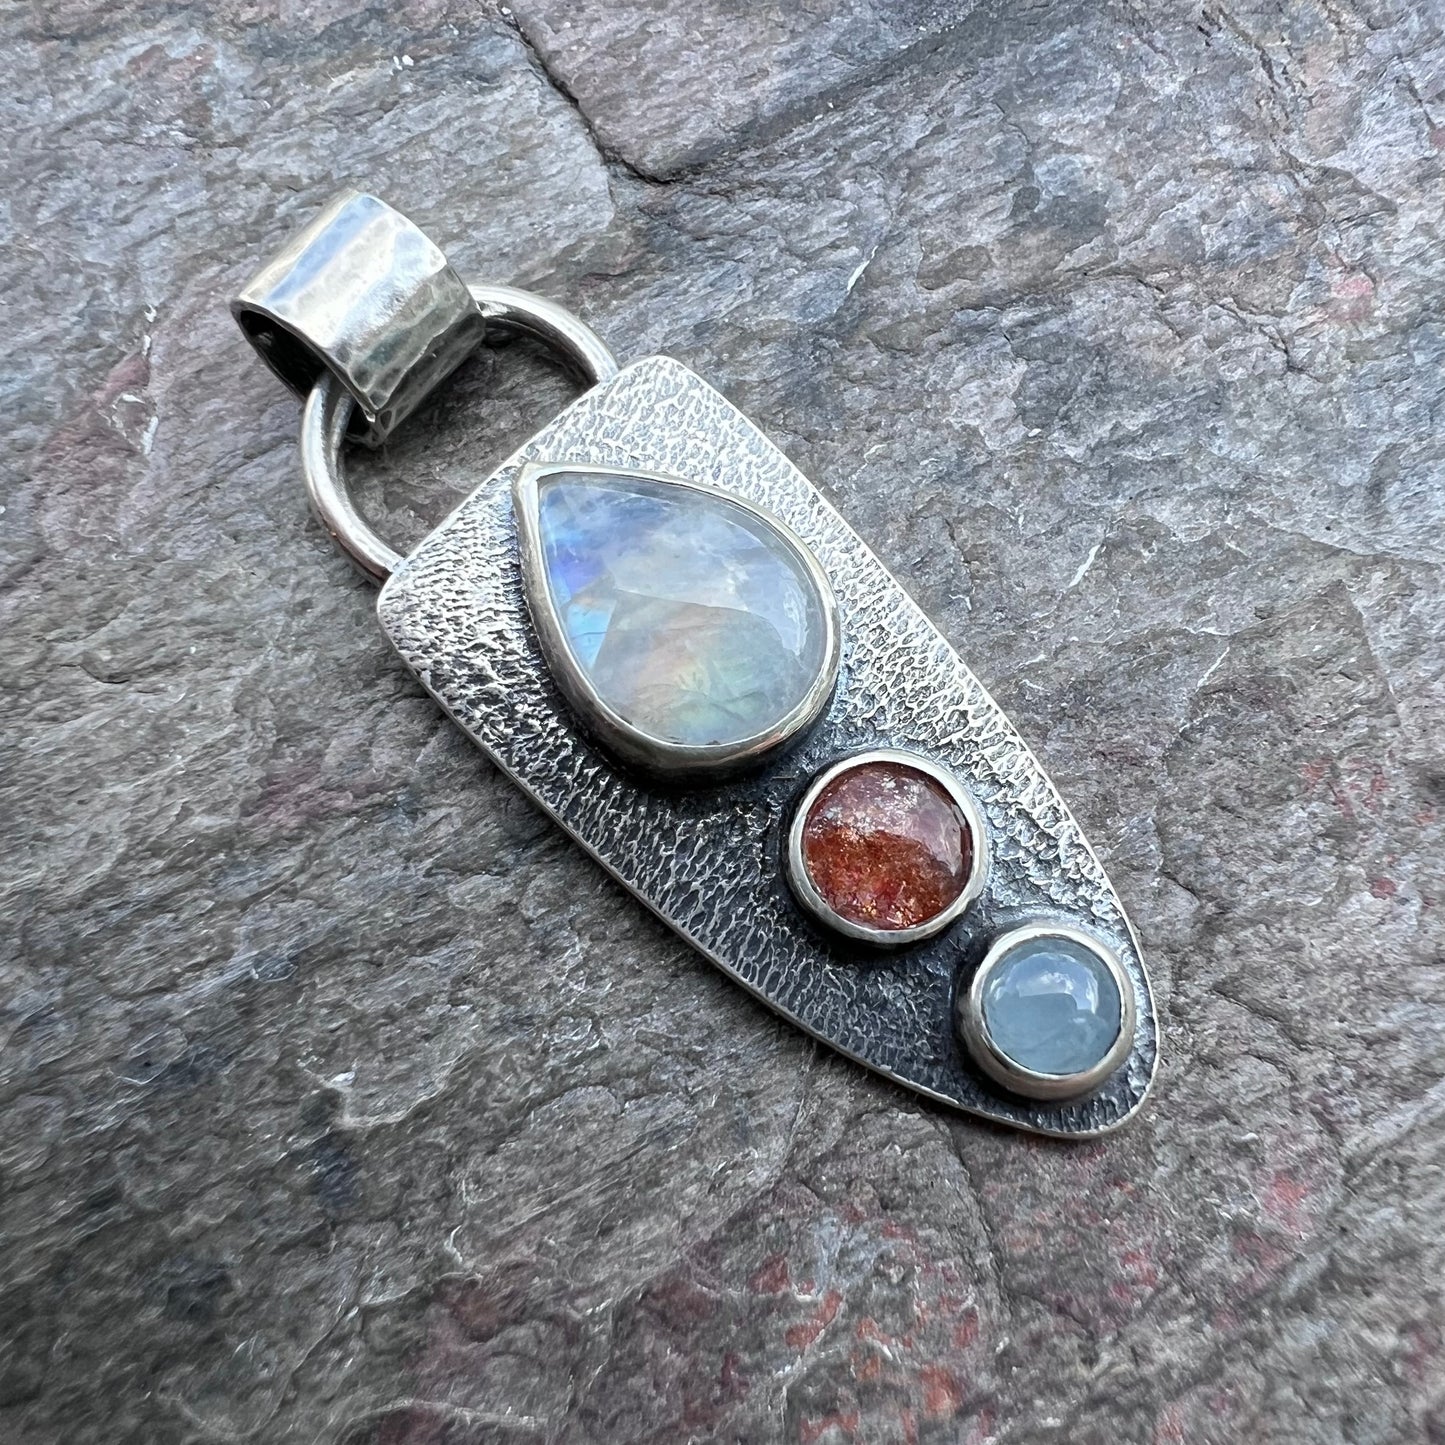 Rainbow Moonstone, Sunstone, and Aquamarine Pendant - Handmade One-of-a-kind Pendant